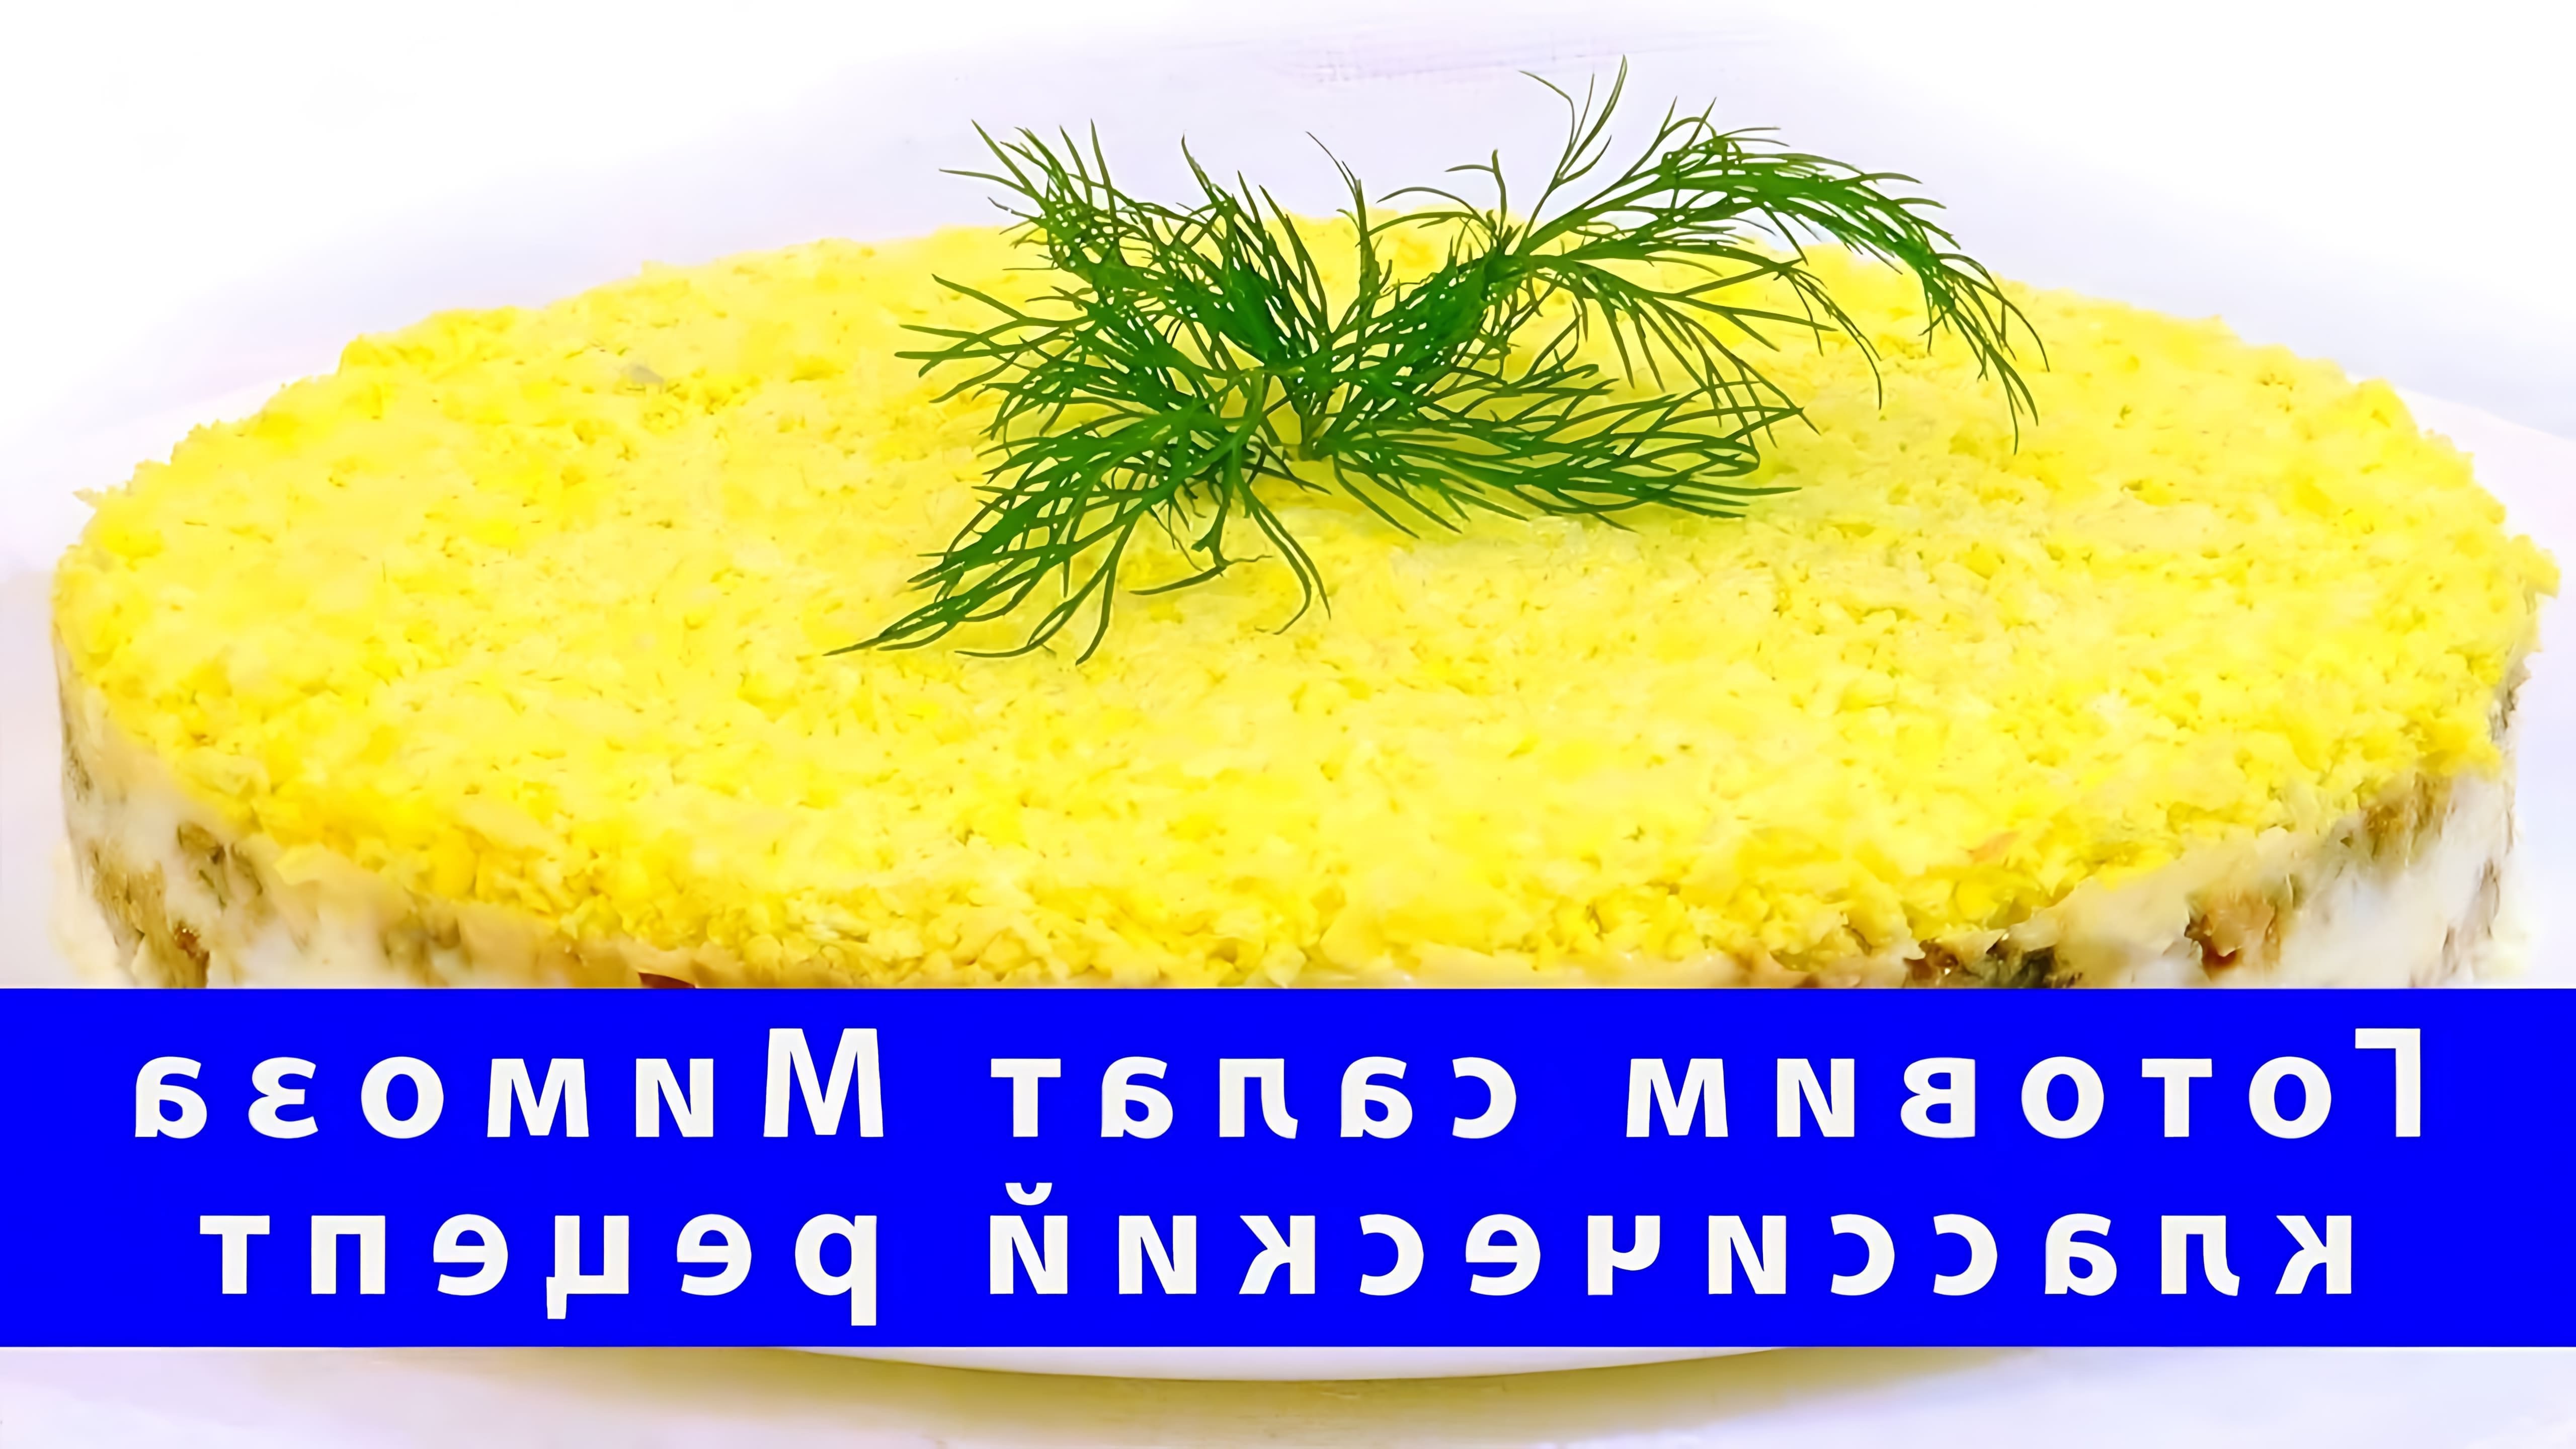 В данном видео демонстрируется процесс приготовления классического салата Мимоза